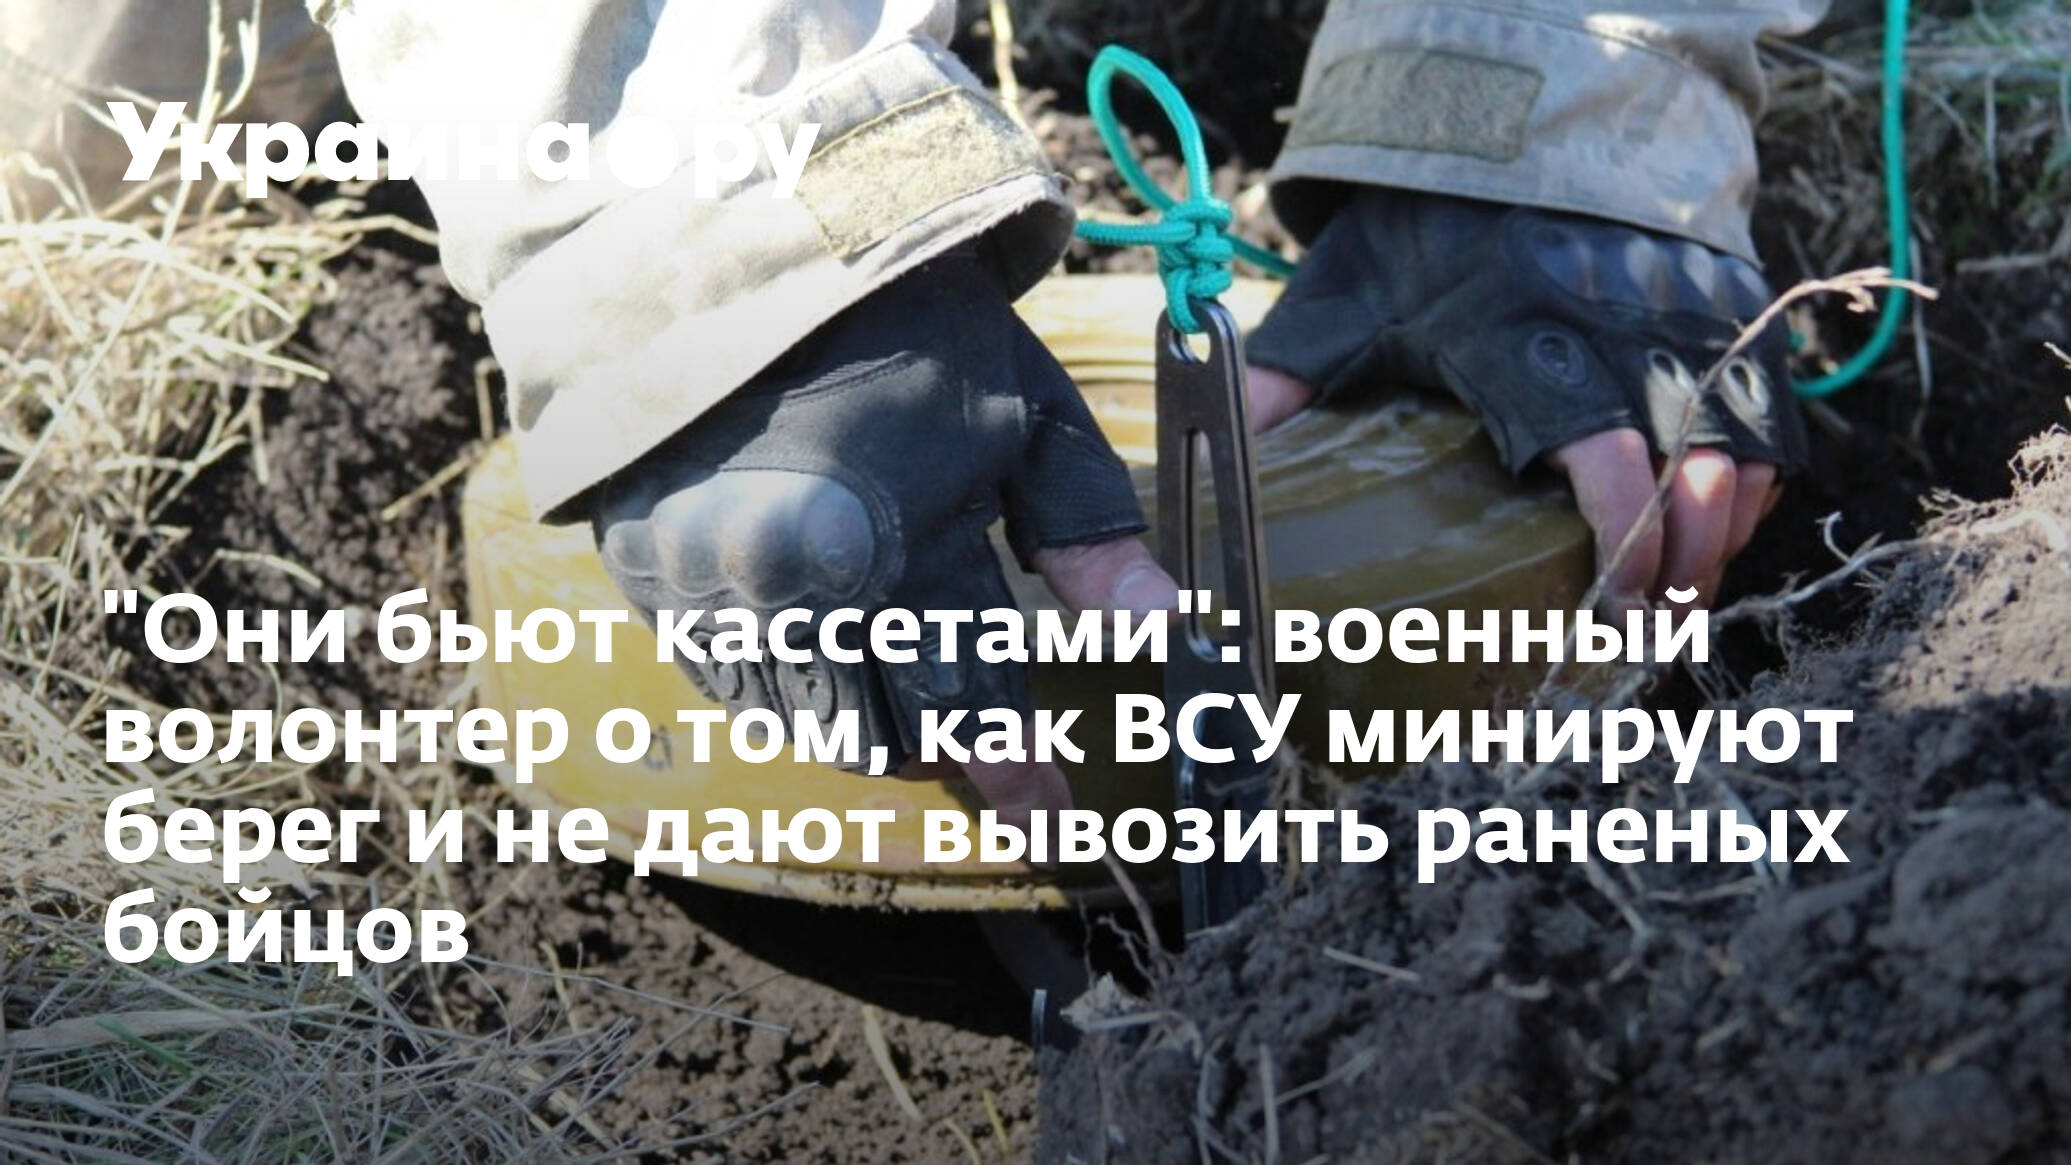 Раненый беречь. Кассеты военные украинские.